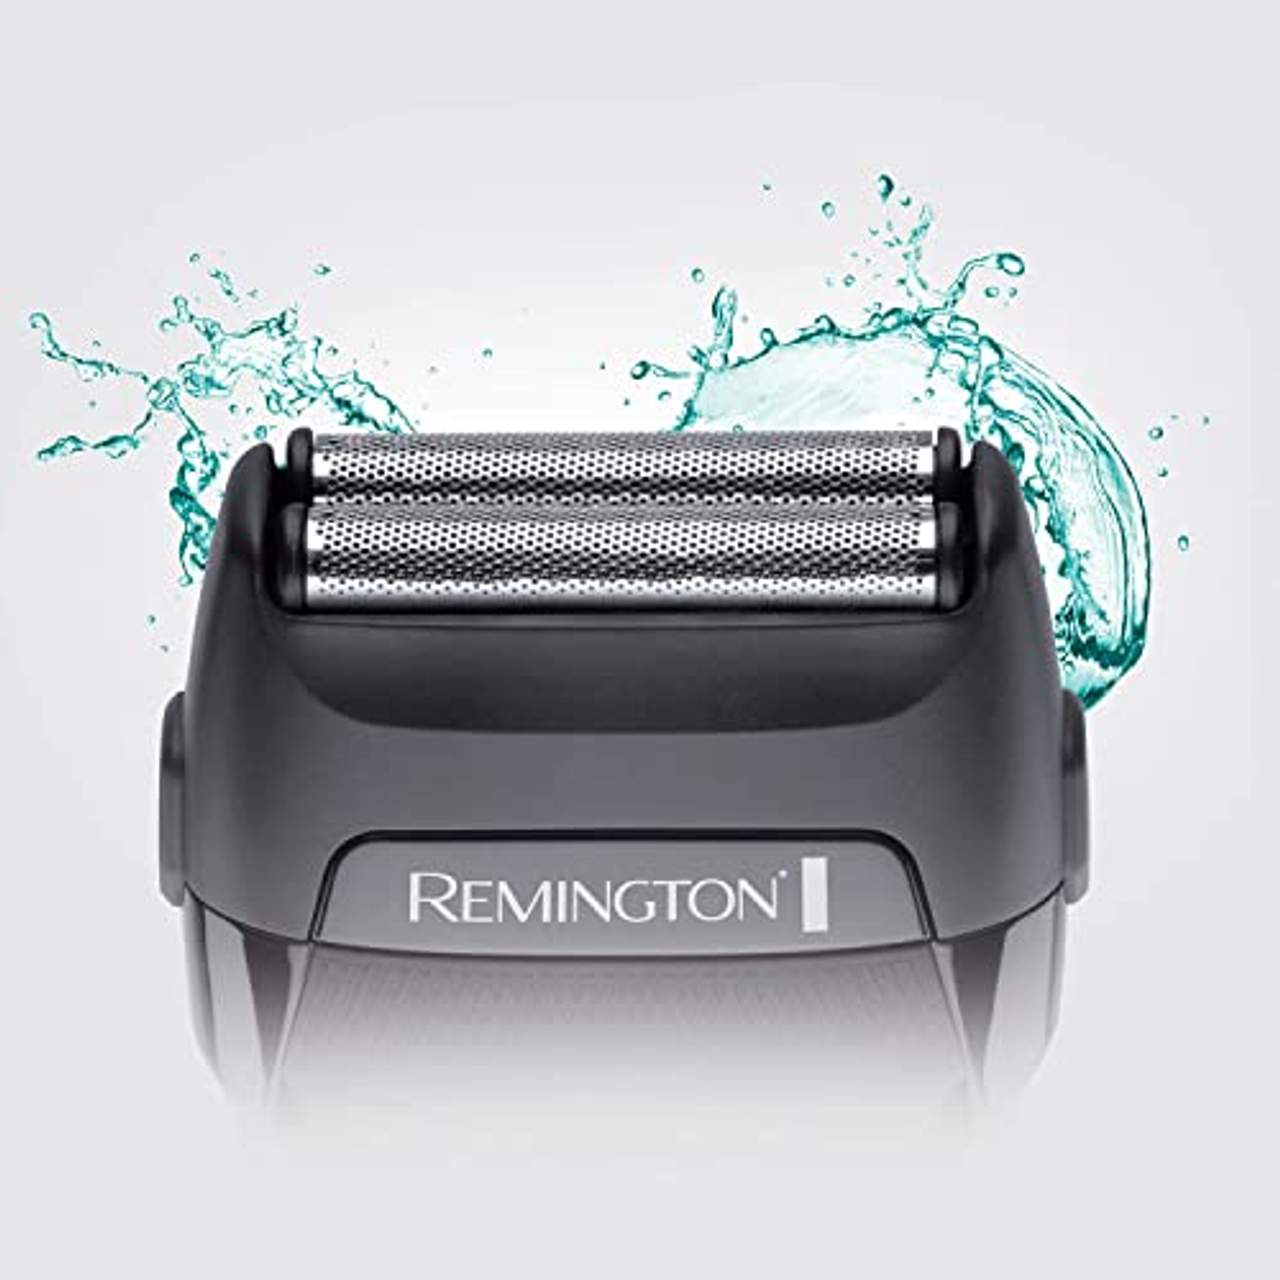 Remington Elektrischer Rasierer Herren F3